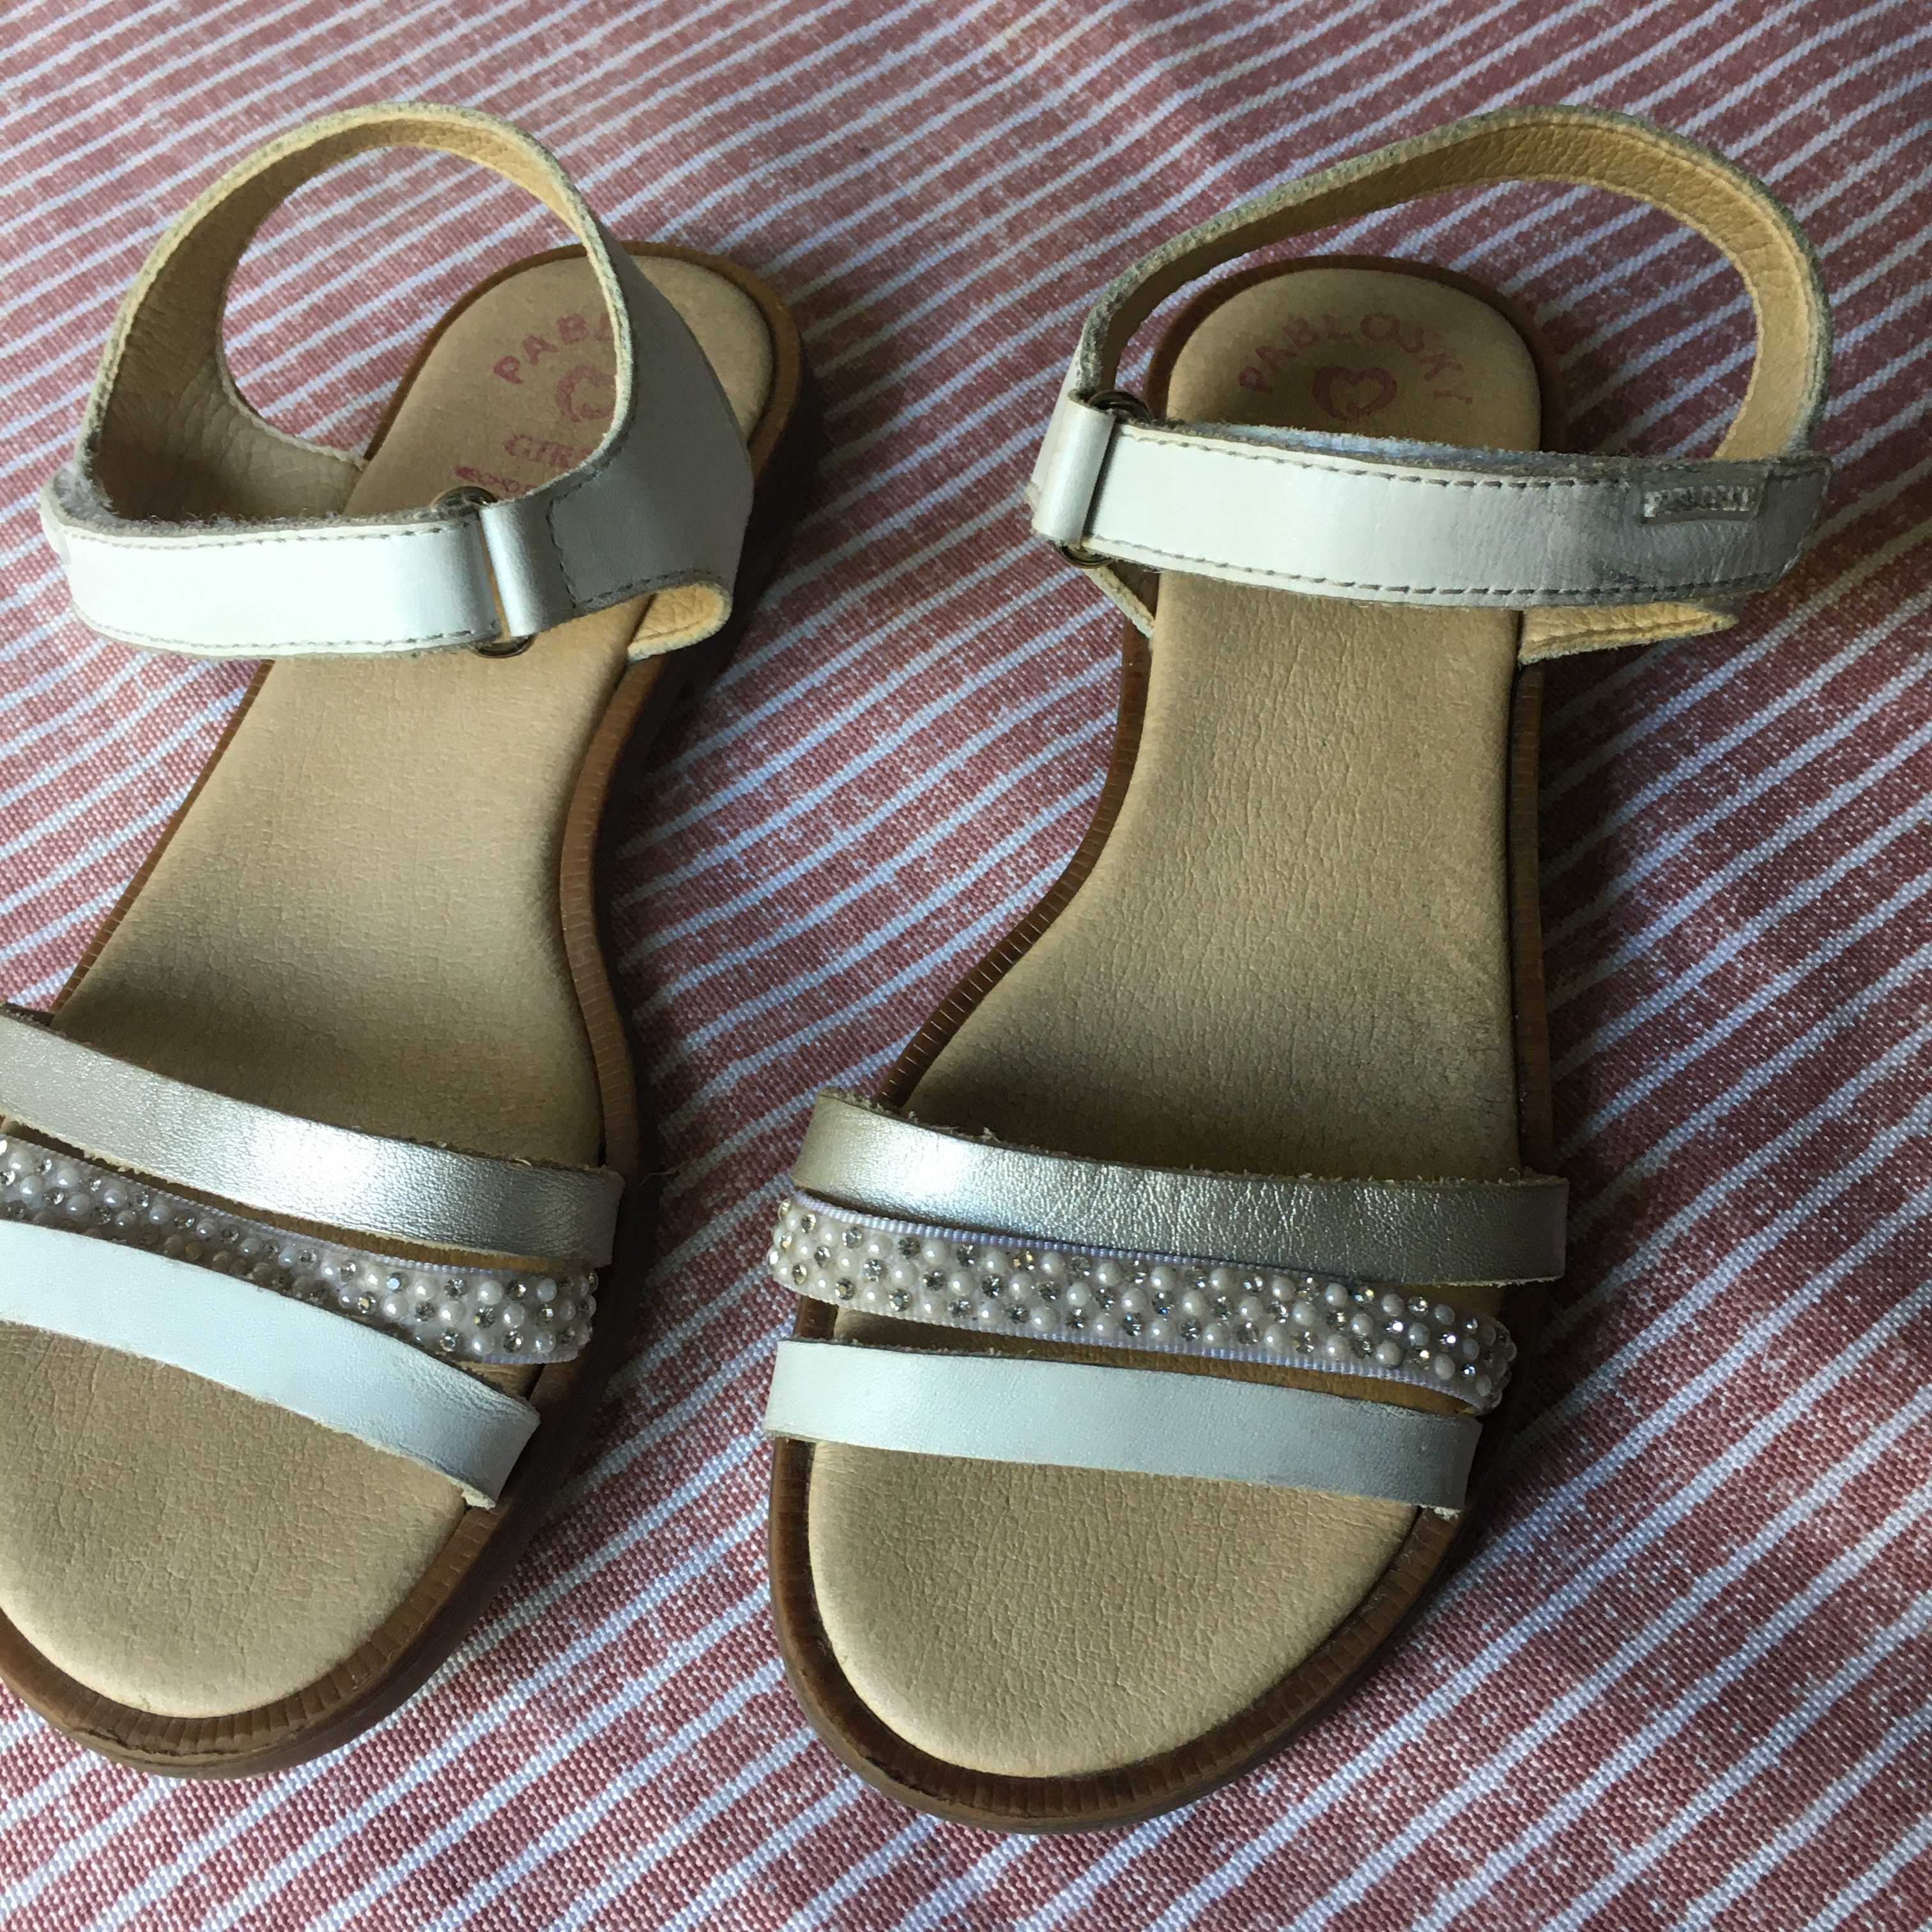 Bonitas sandálias para menina, da marca Pablosky